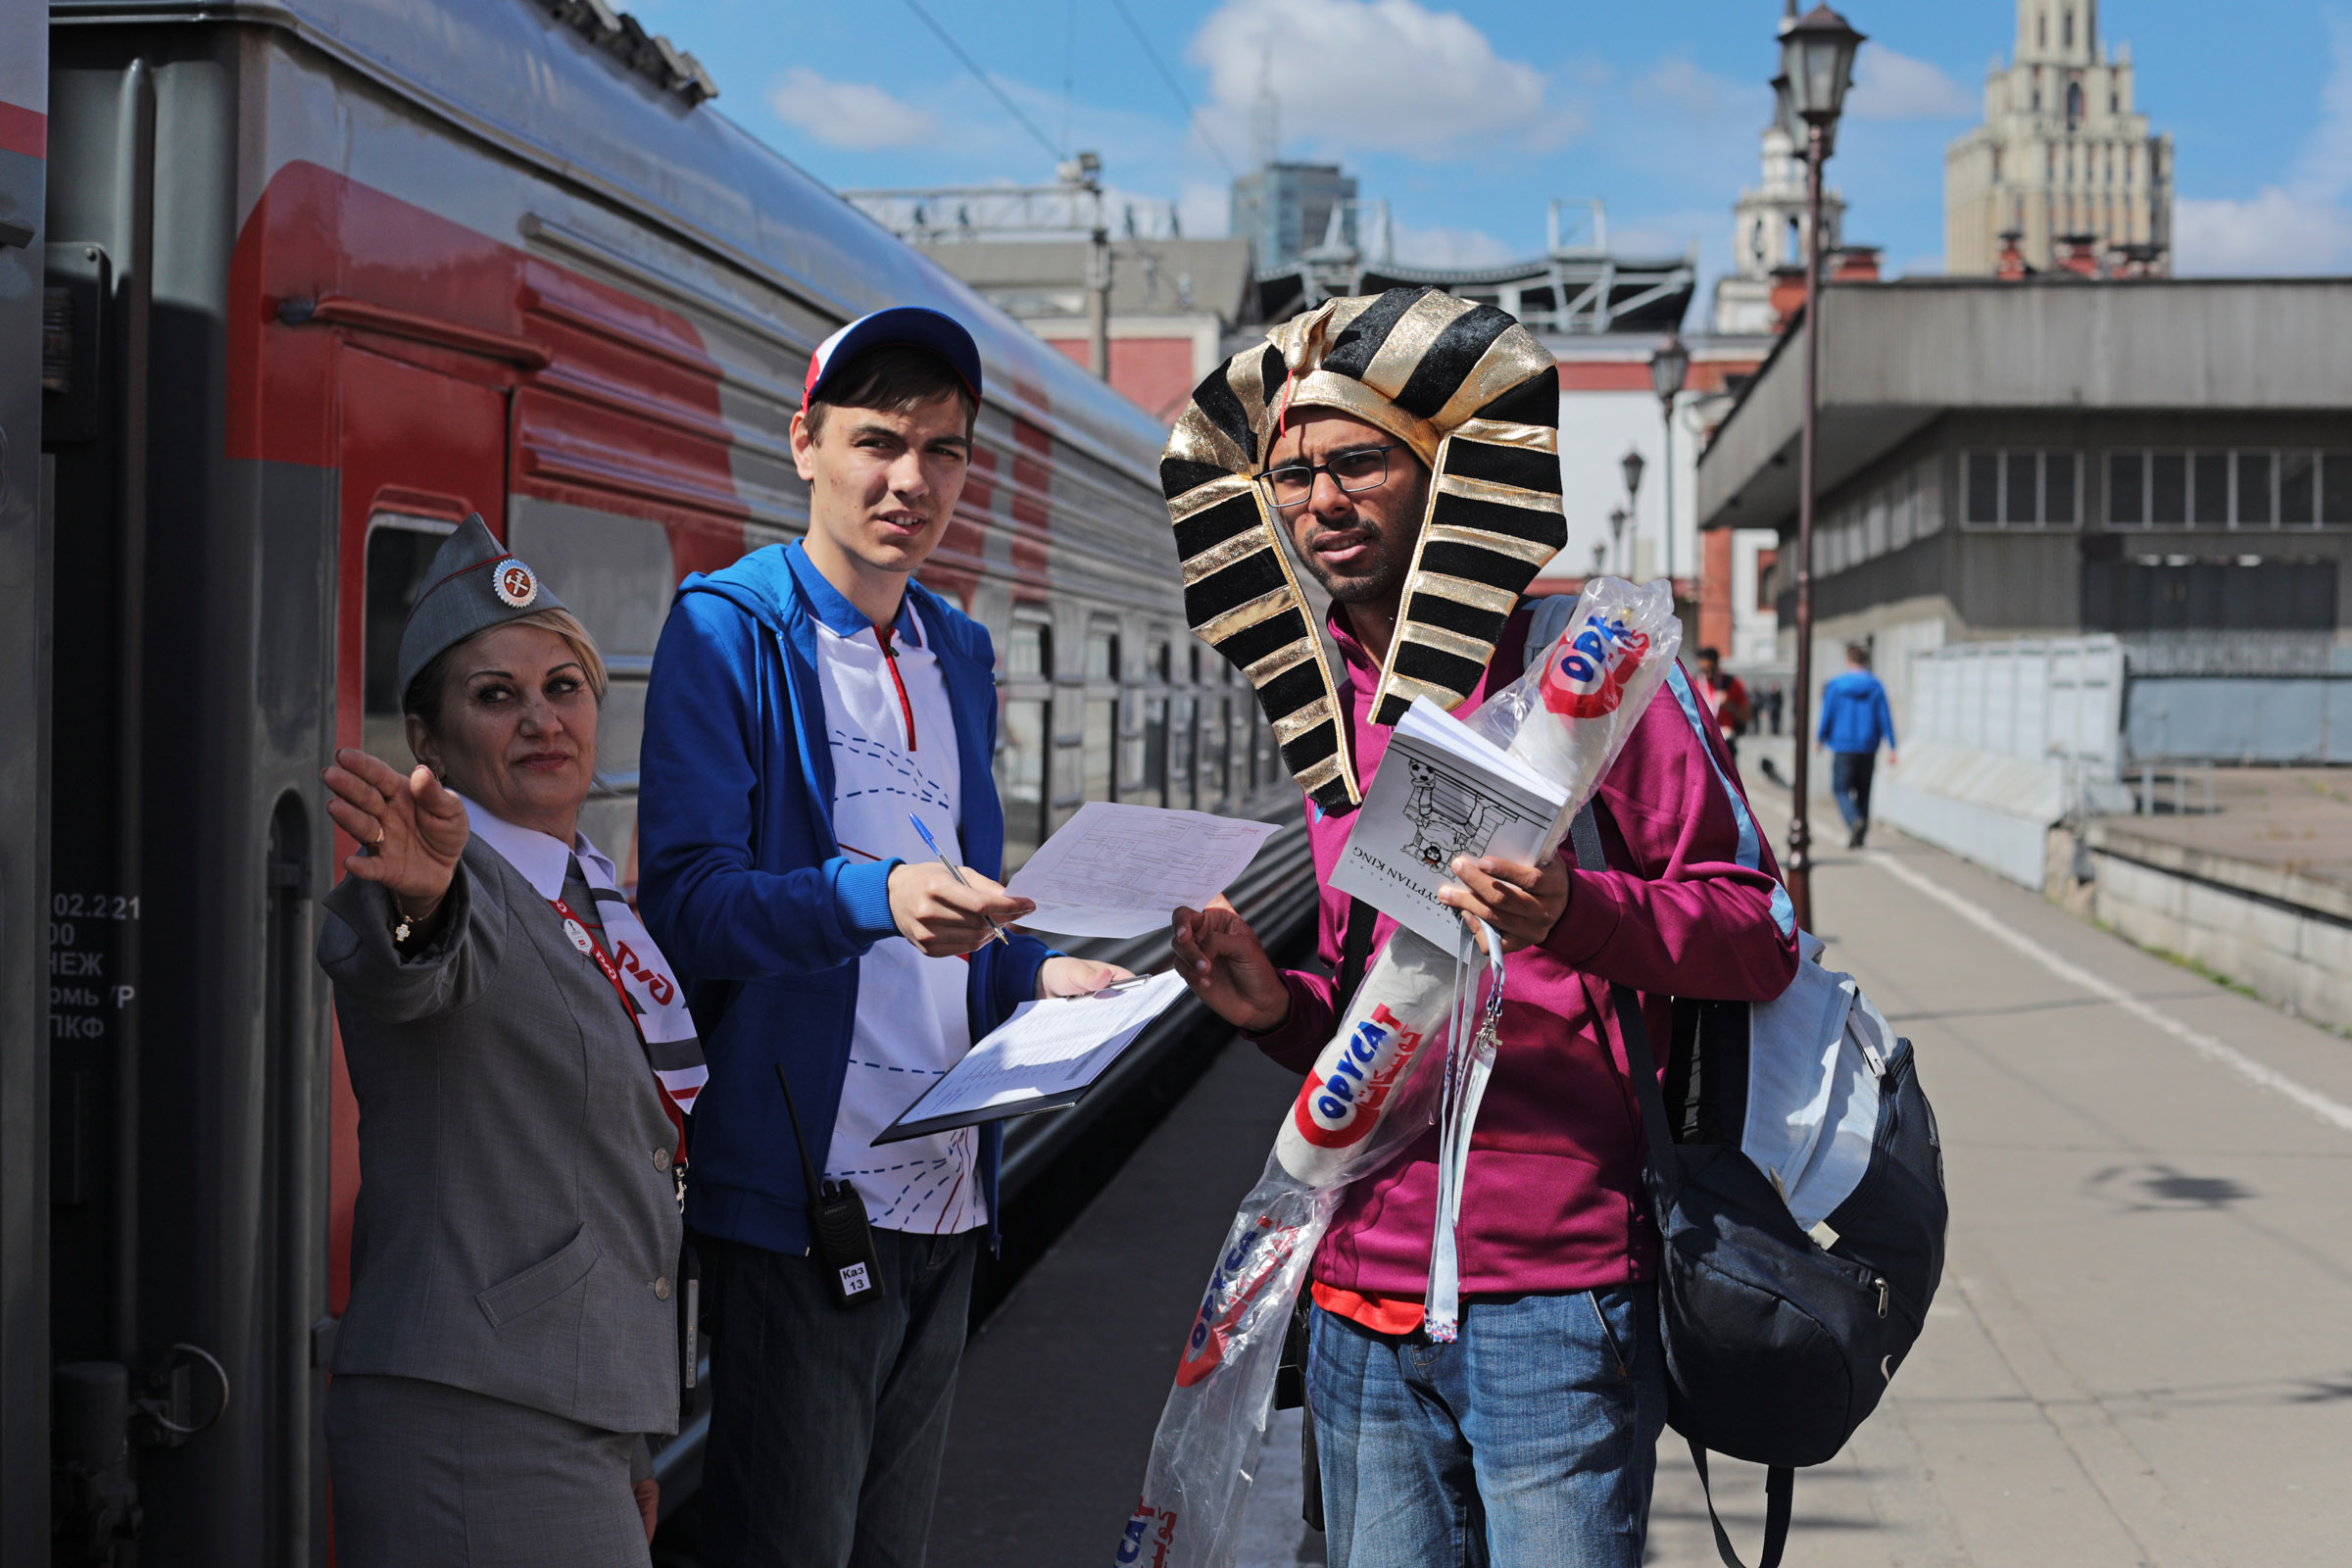 Утром 14 июня на Казанском вокзале Москвы иностранцы ждали бесплатный поезд в Екатеринбург, где 15 июня пройдет матч между сборными Египта и Уругвая